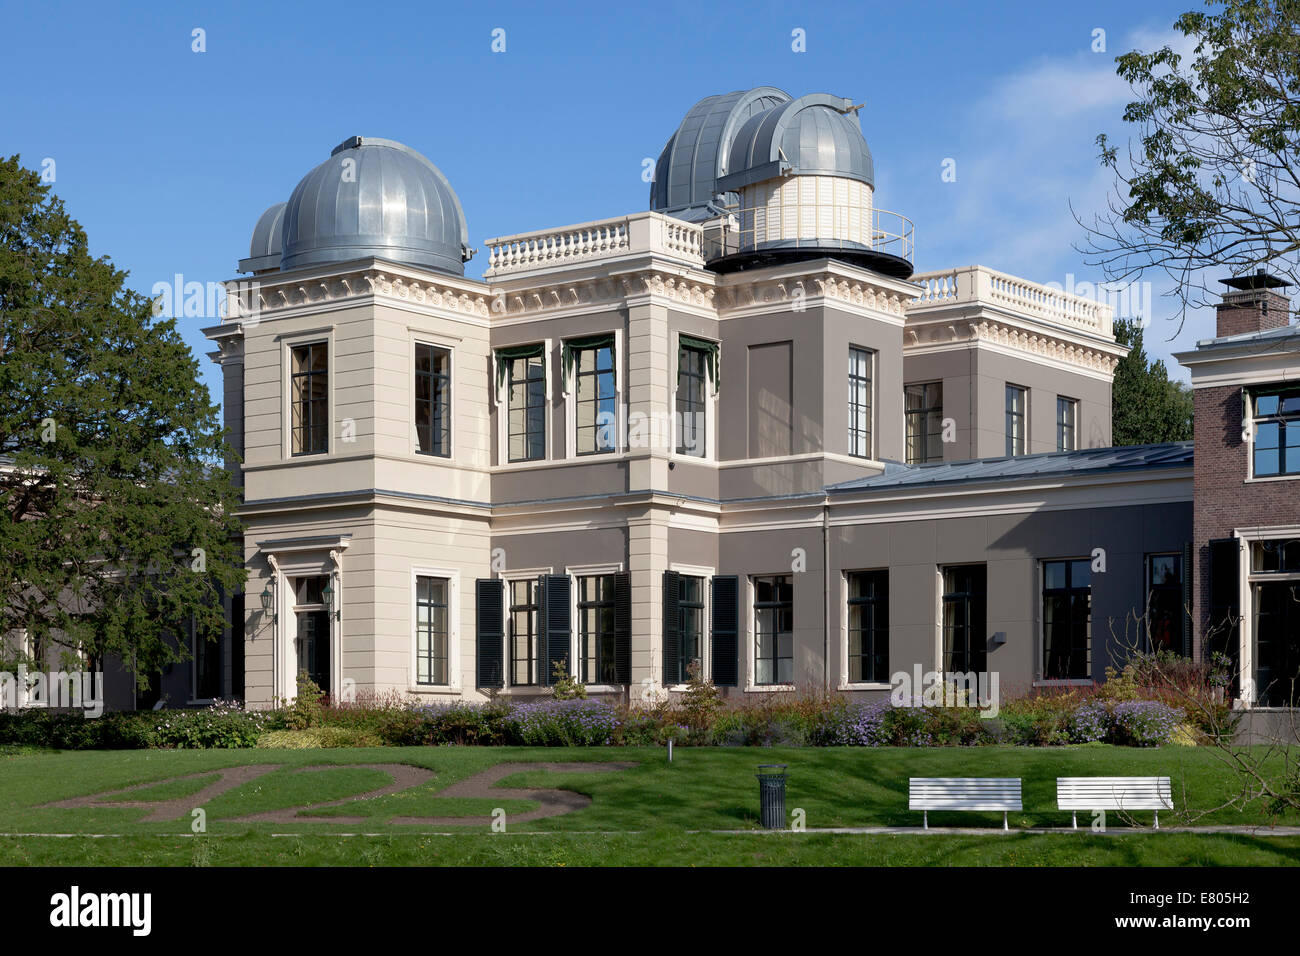 Observatorium of the Hortus botanicus in Leiden, Holland Stock Photo